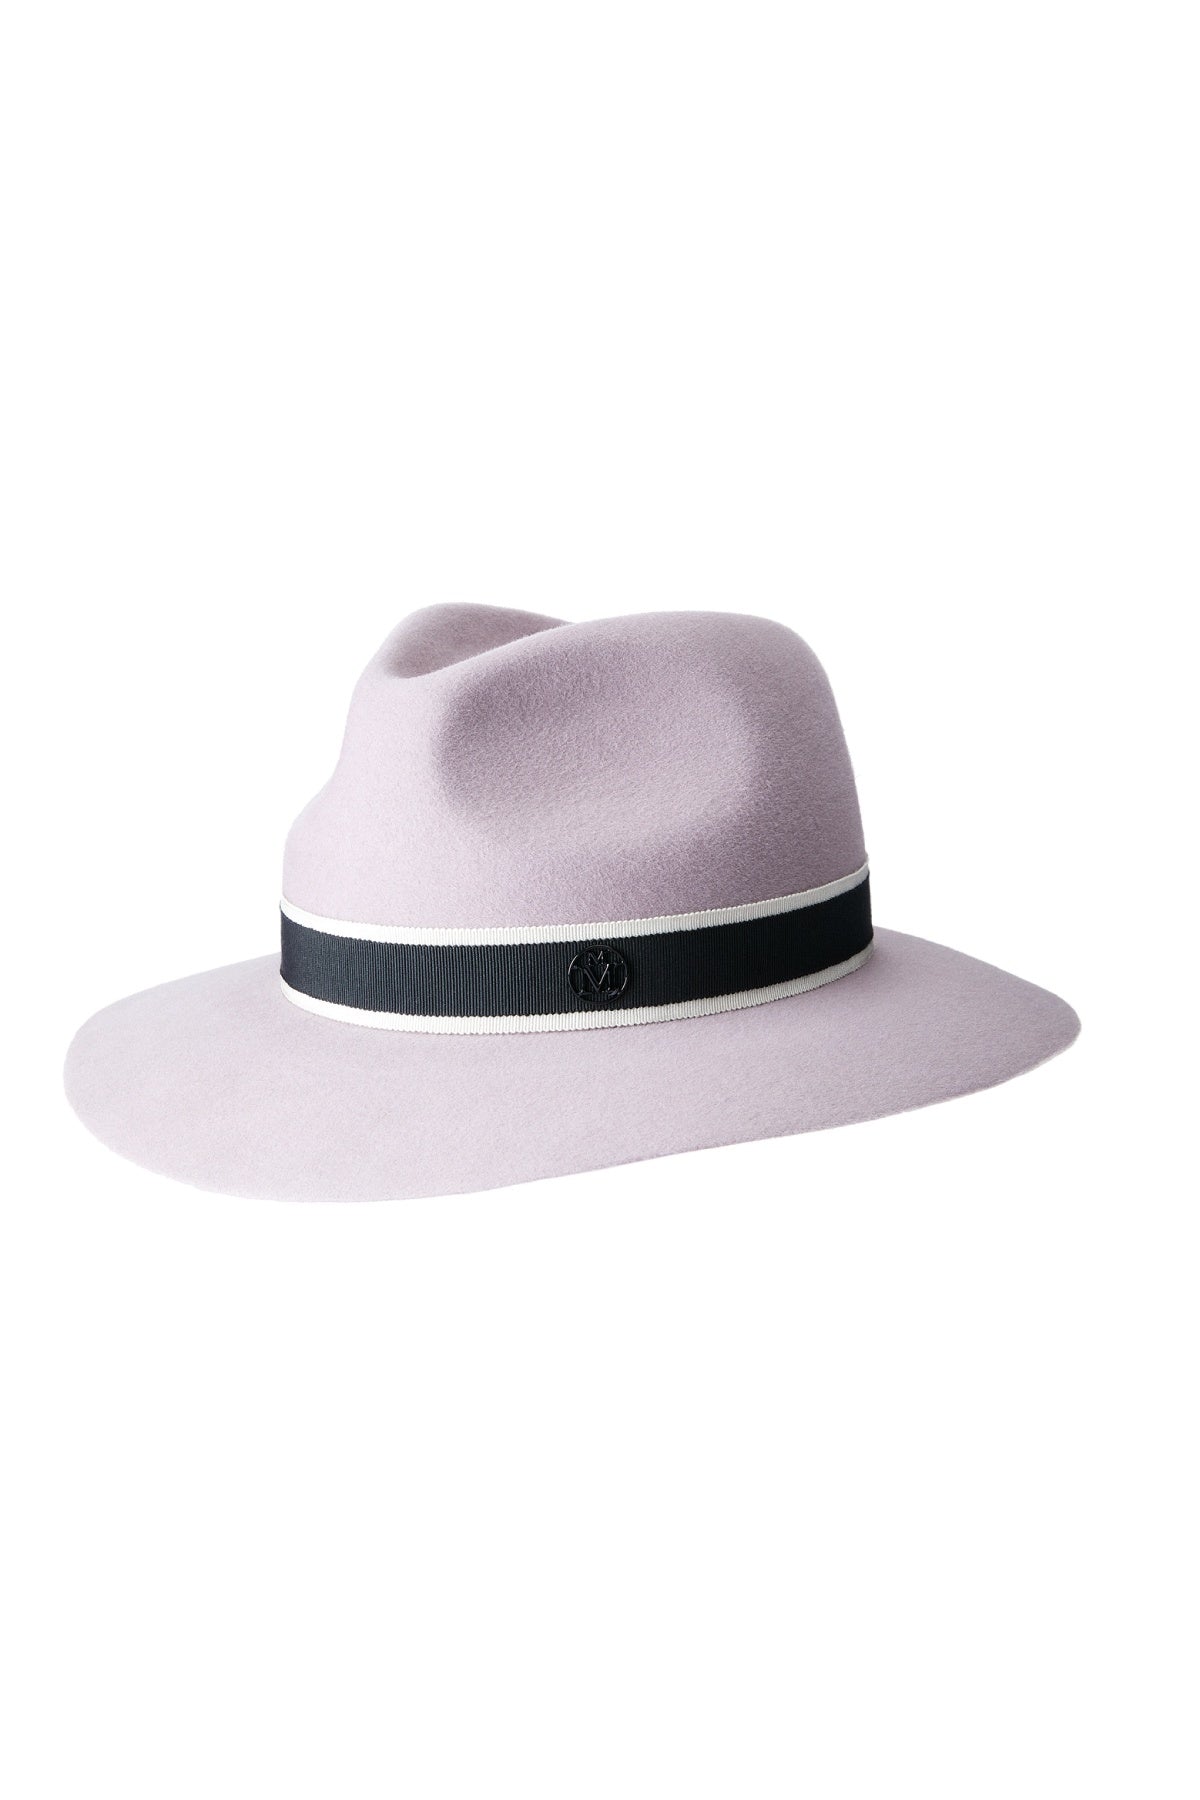 Maison Michel Rico Felt Hat - Lilac